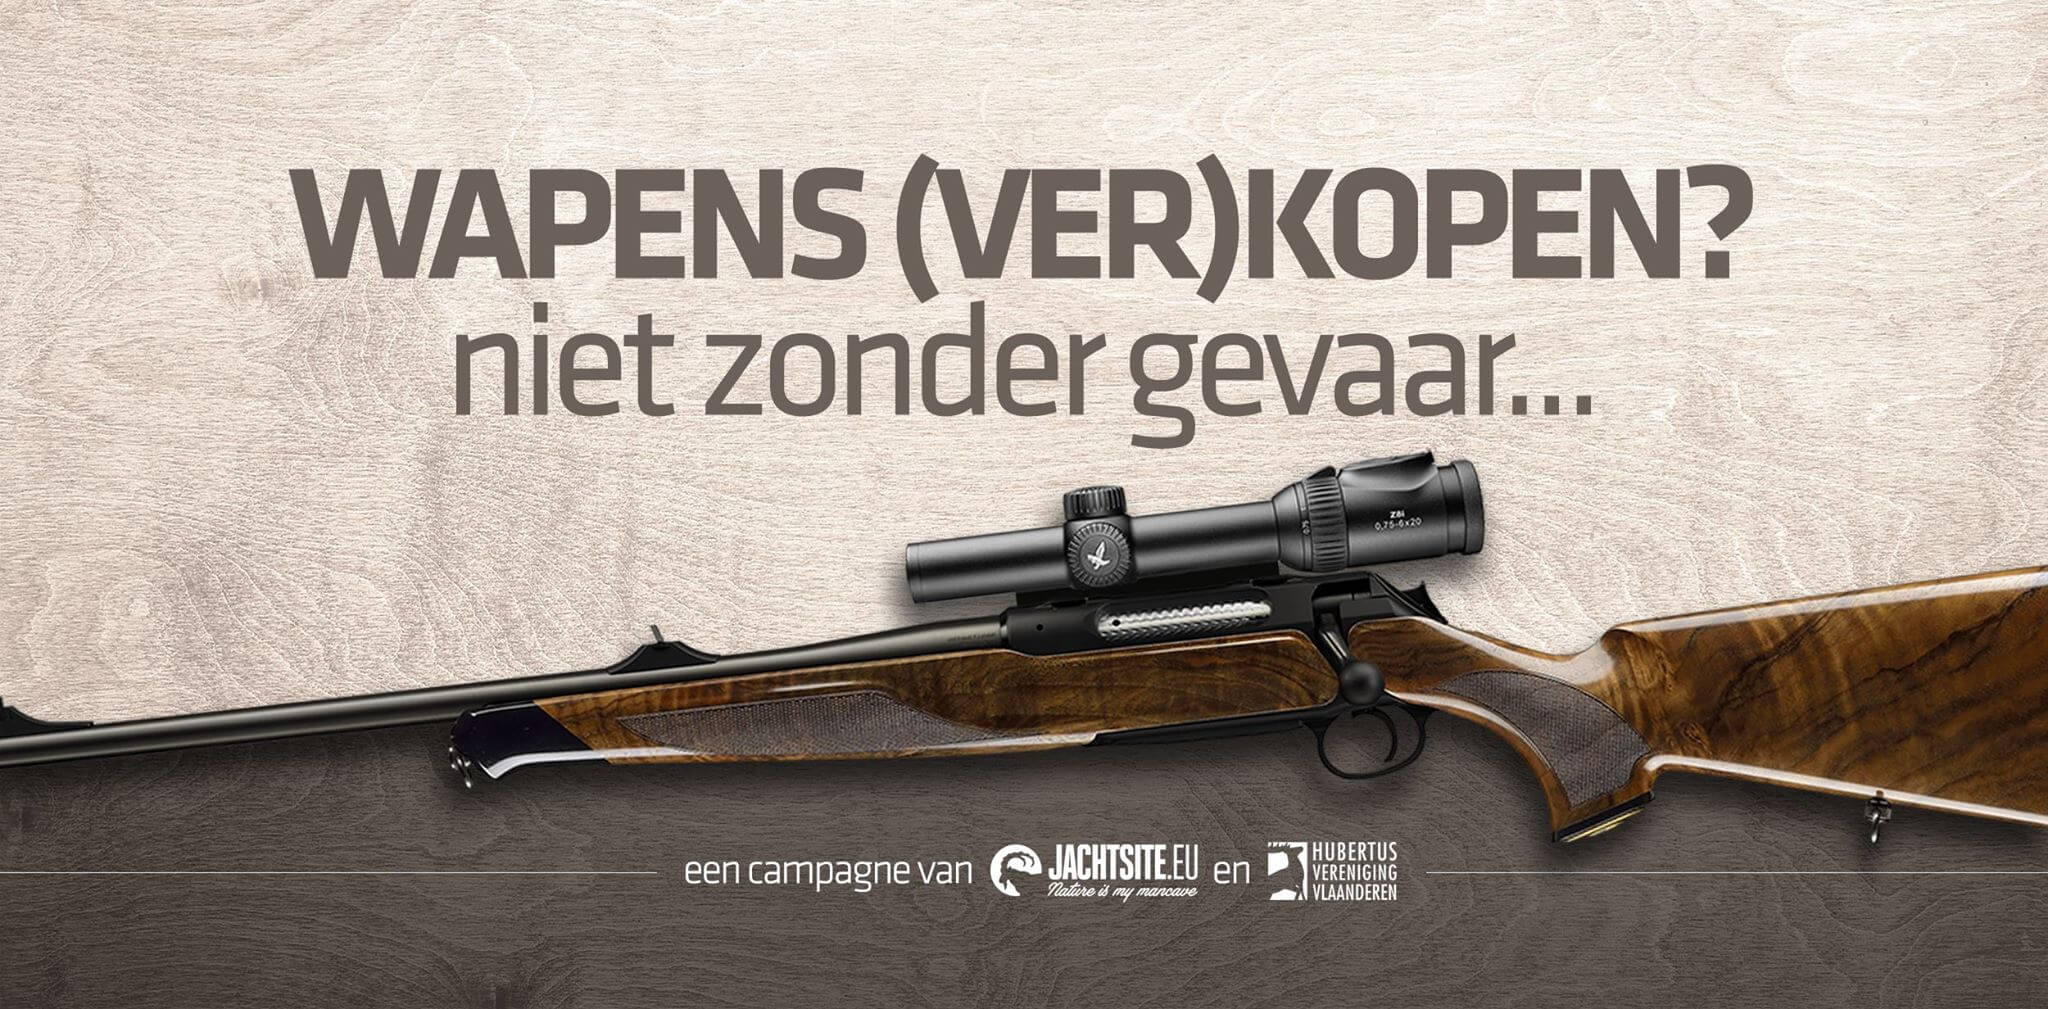 Kwestie: mag ik een tweedehands wapen online verkopen? Hubertus Vereniging Vlaanderen